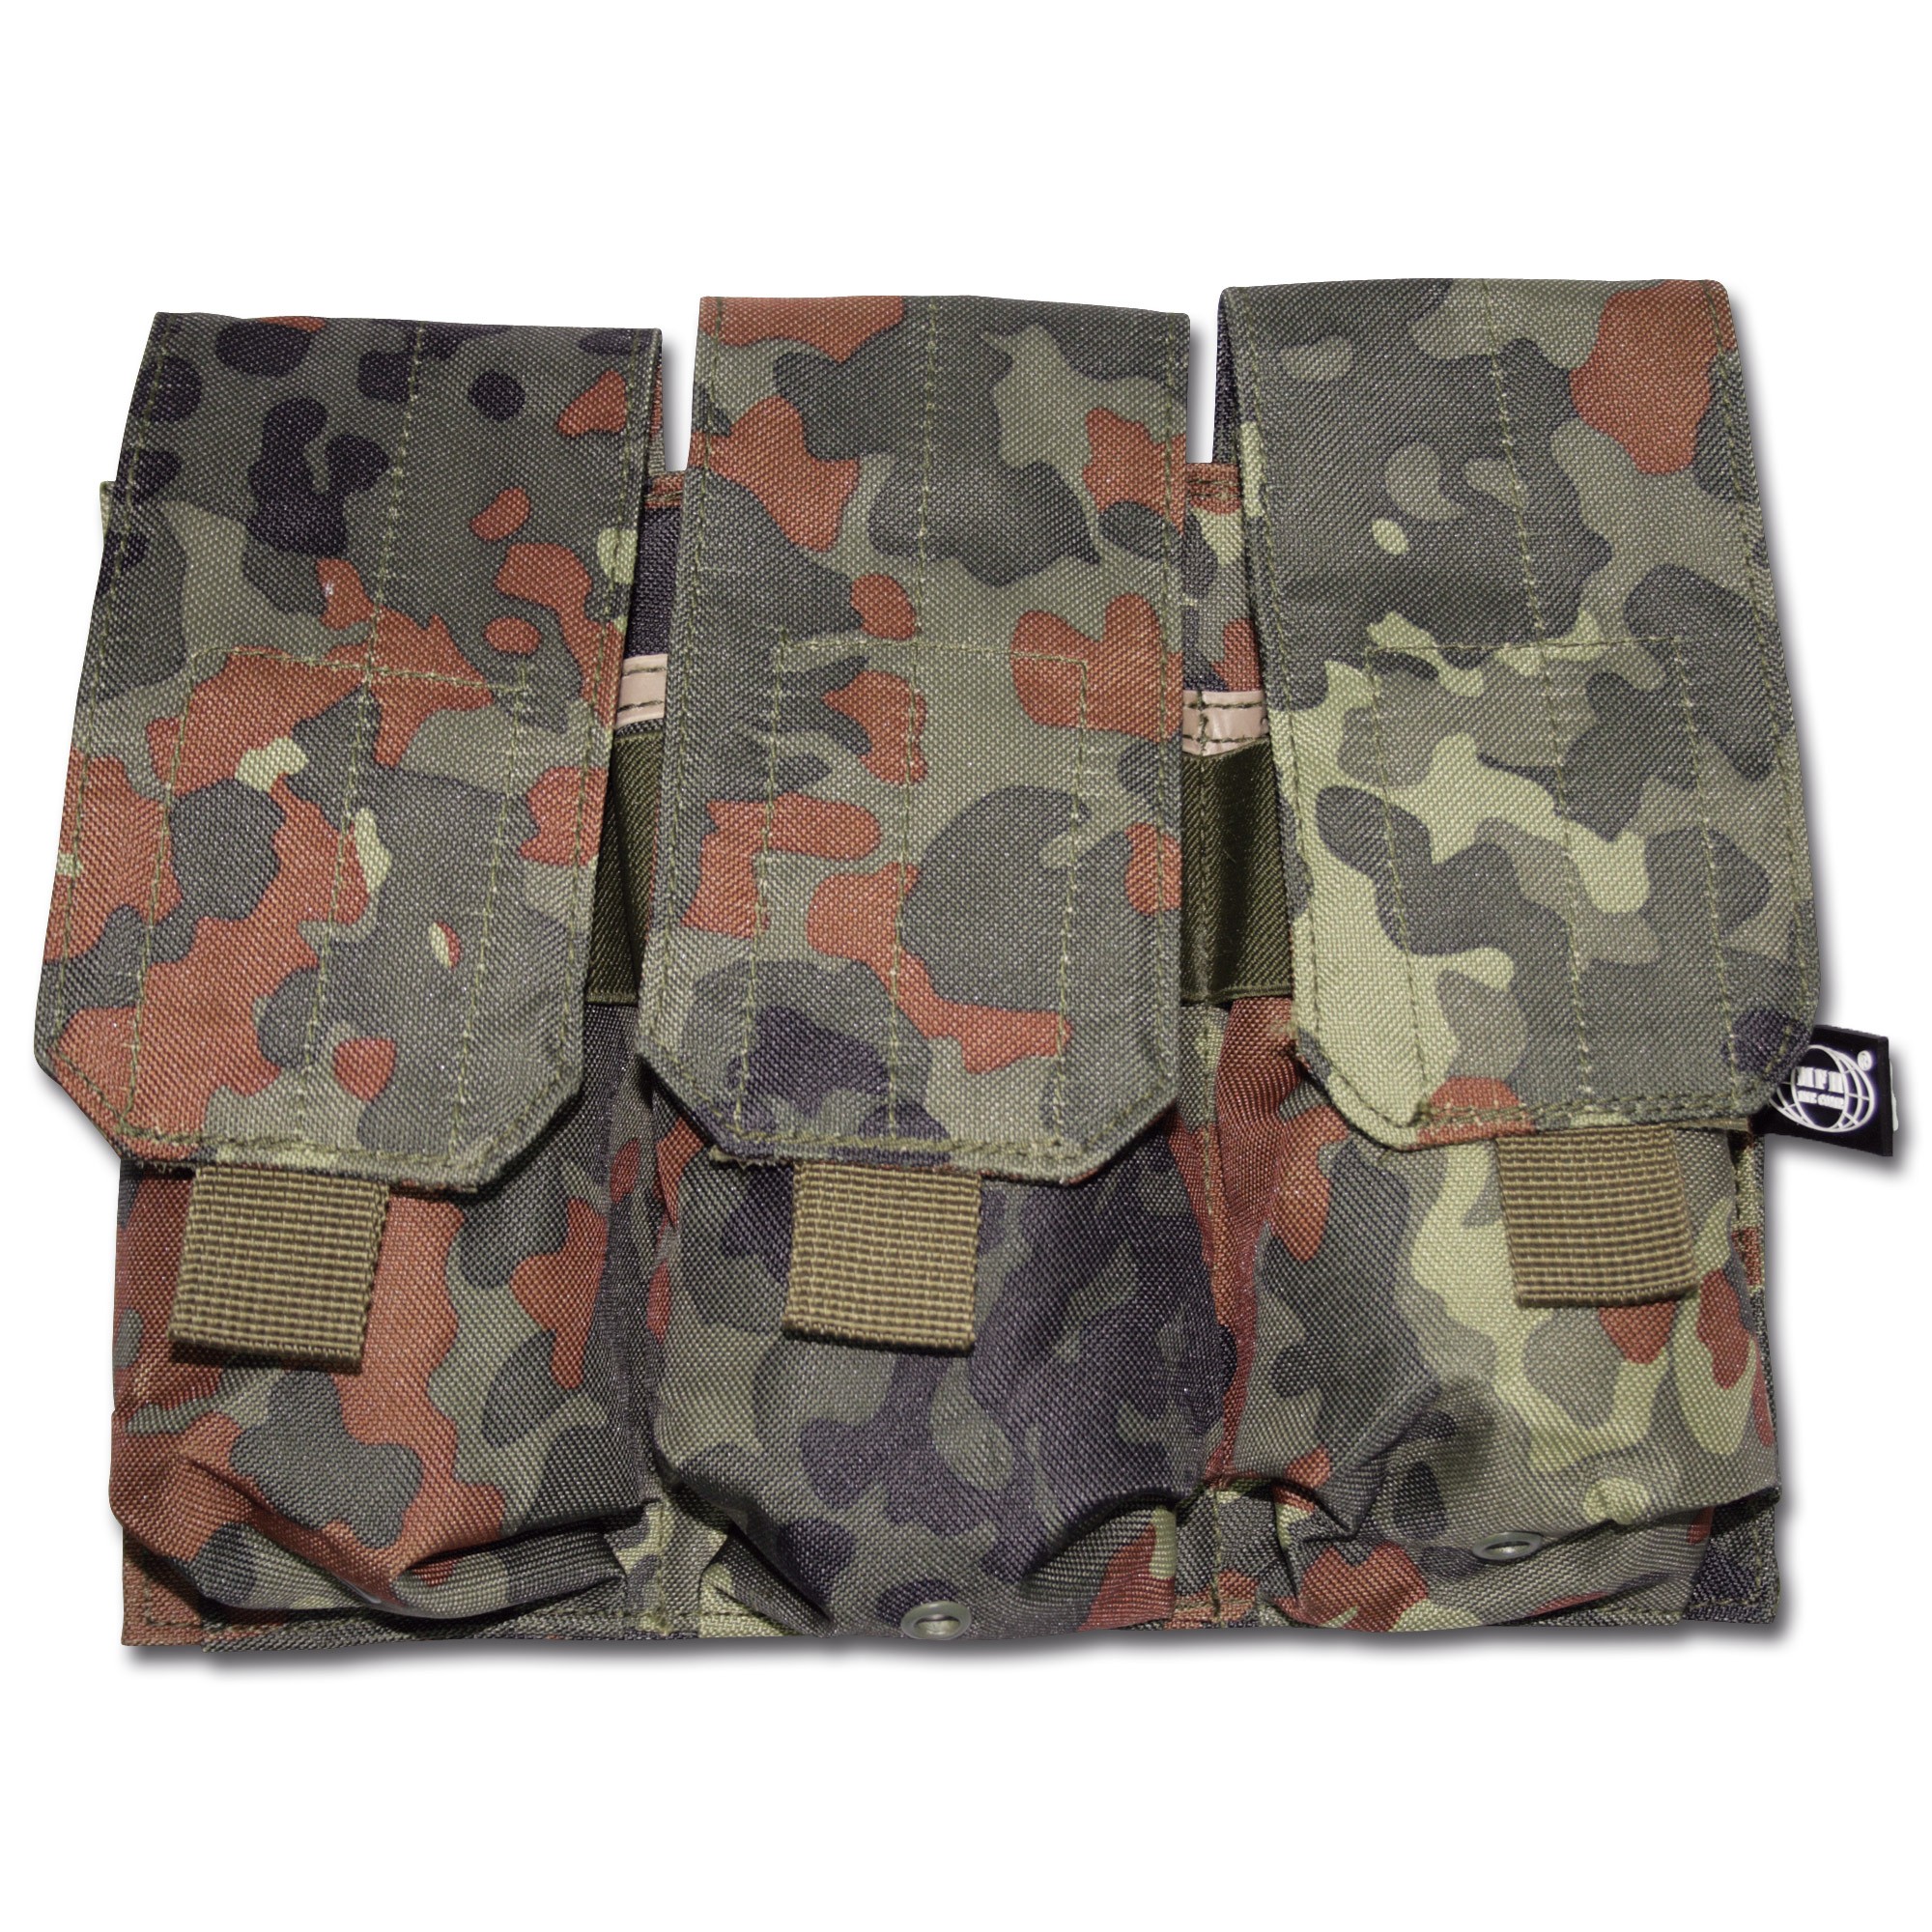 Magazintasche dreifach Molle Tasche für 3 Magazine Militär Tasche flecktarn 